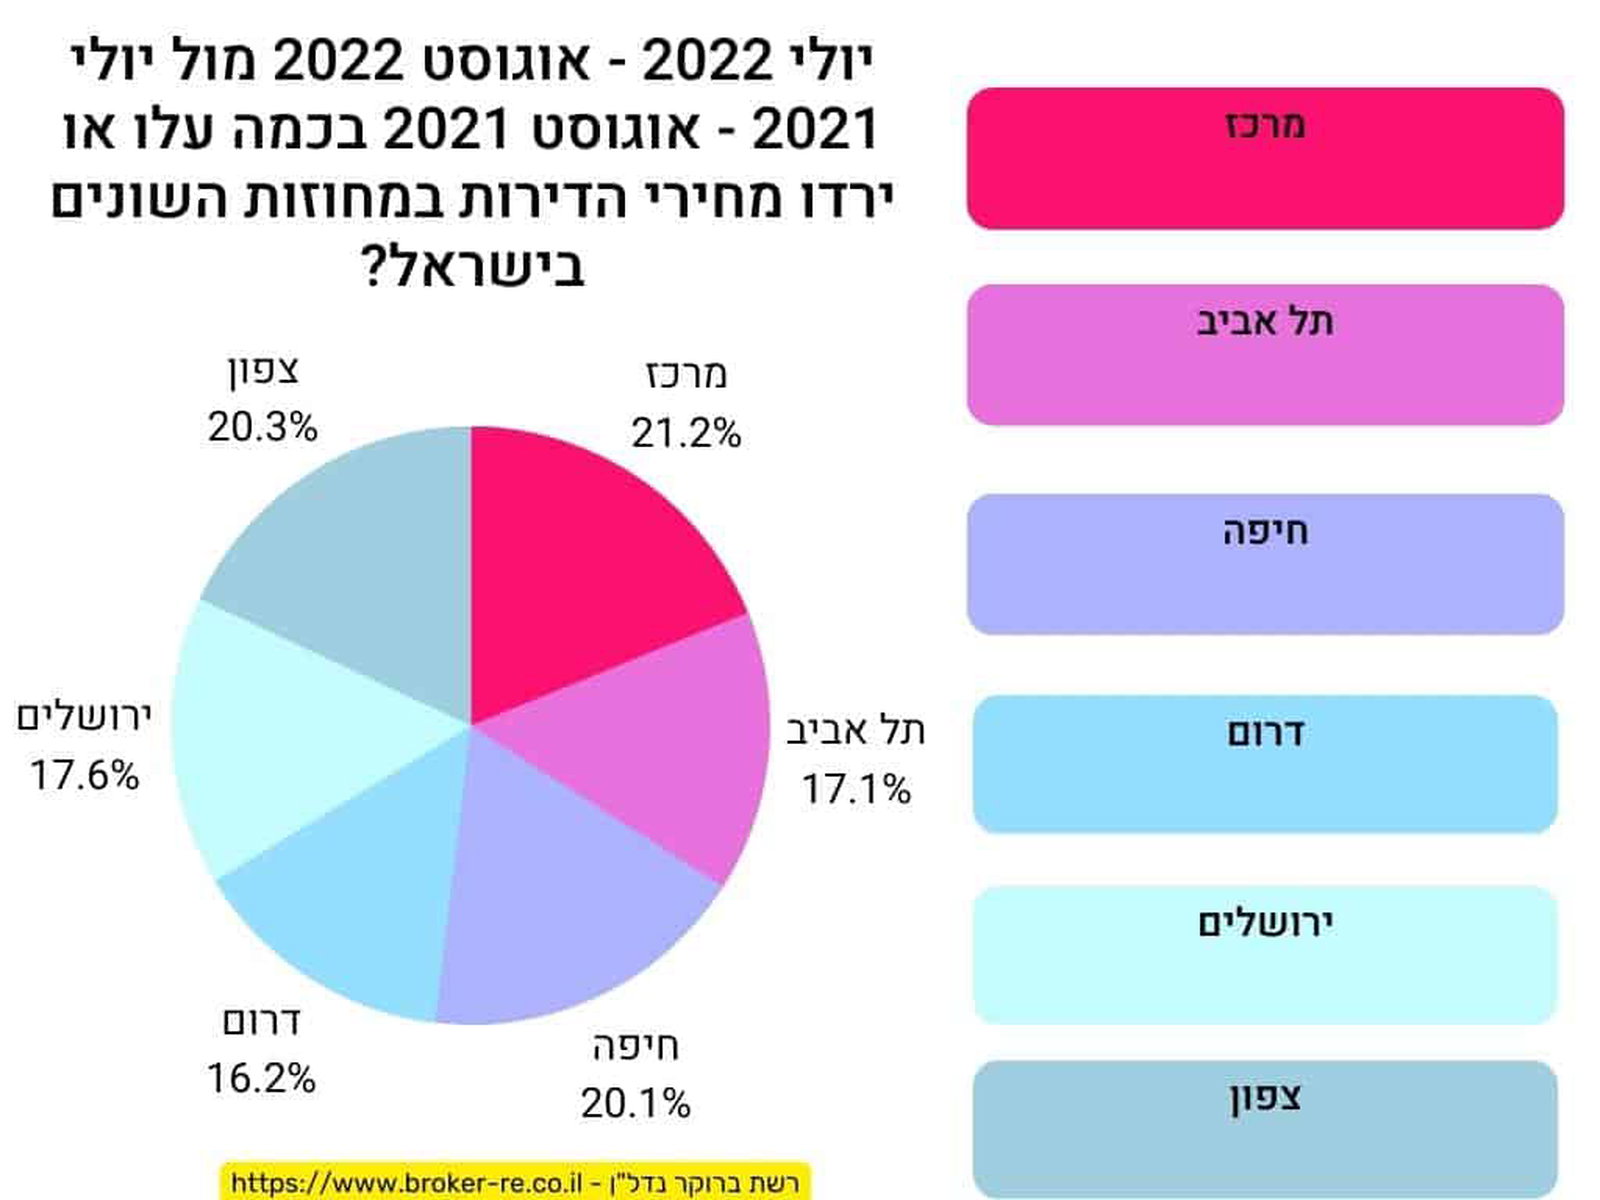 יולי 2022 - אוגוסט 2022 מול יולי 2021 - אוגוסט 2021 בכמה עלו או ירדו מחירי הדירות במחוזות השונים בישראל? 